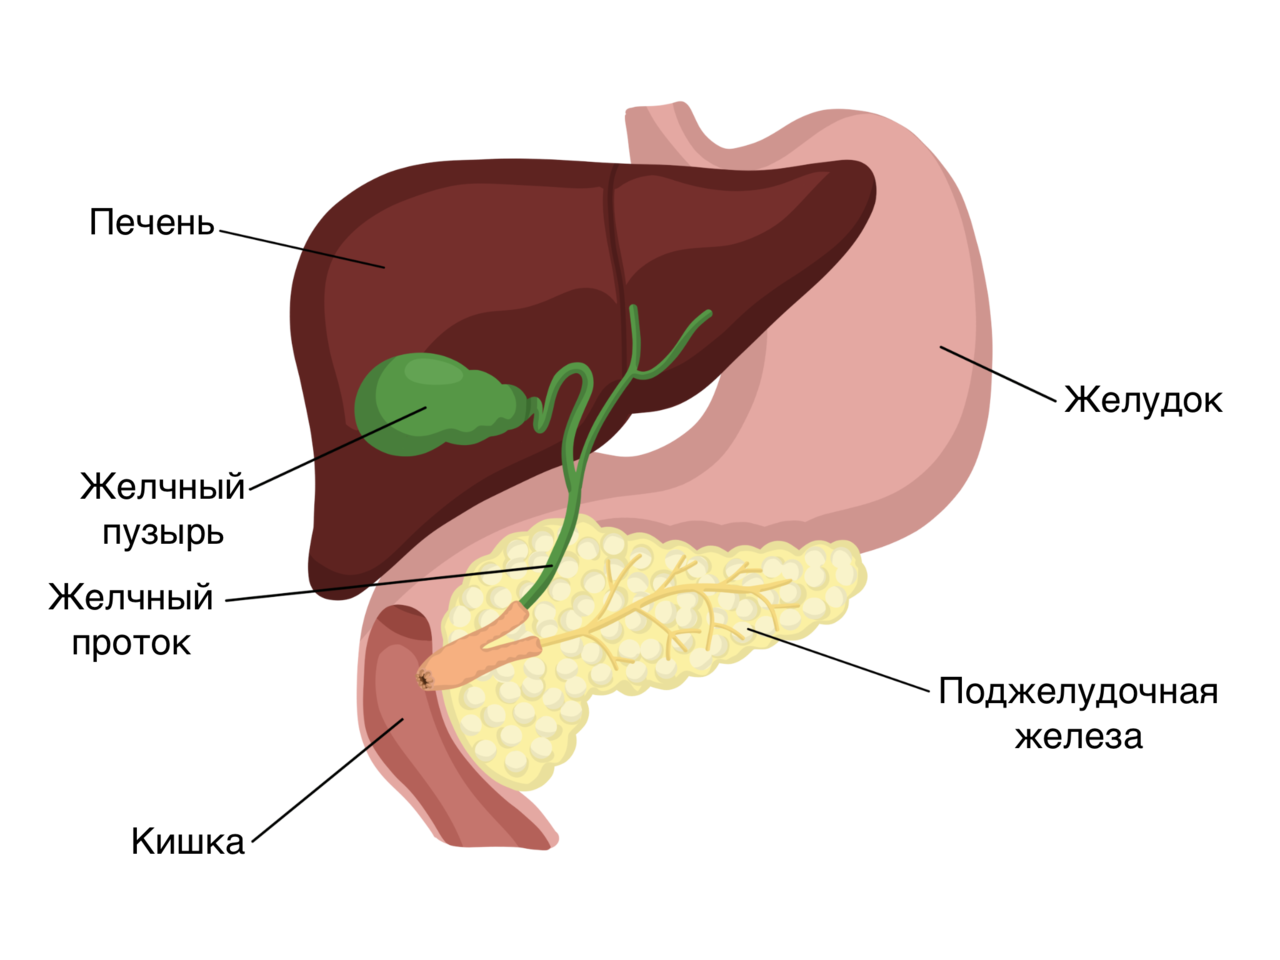 Органы желудок кишечник печень. Анатомия печень желчный пузырь желудок. Печень это орган пищеварительной системы. Желудок поджелудочная железа печень желчный пузырь анатомия. Схема печени и желчного пузыря человека.